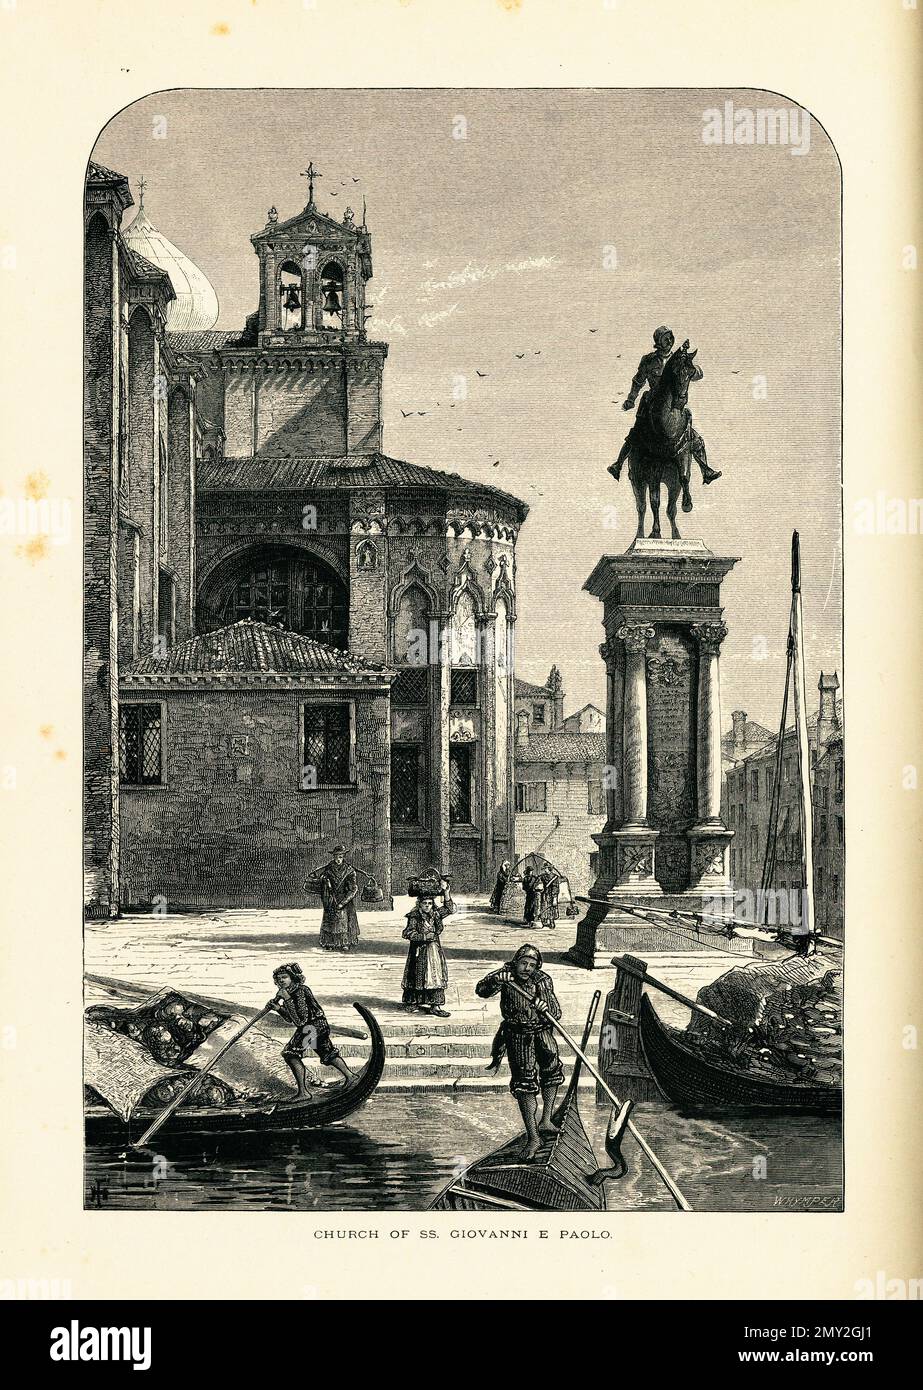 Antica incisione in legno della Basilica di San Giovanni e Paolo, una delle più grandi chiese di Venezia. Illustrazione pubblicata nella pittoresca Europa Foto Stock